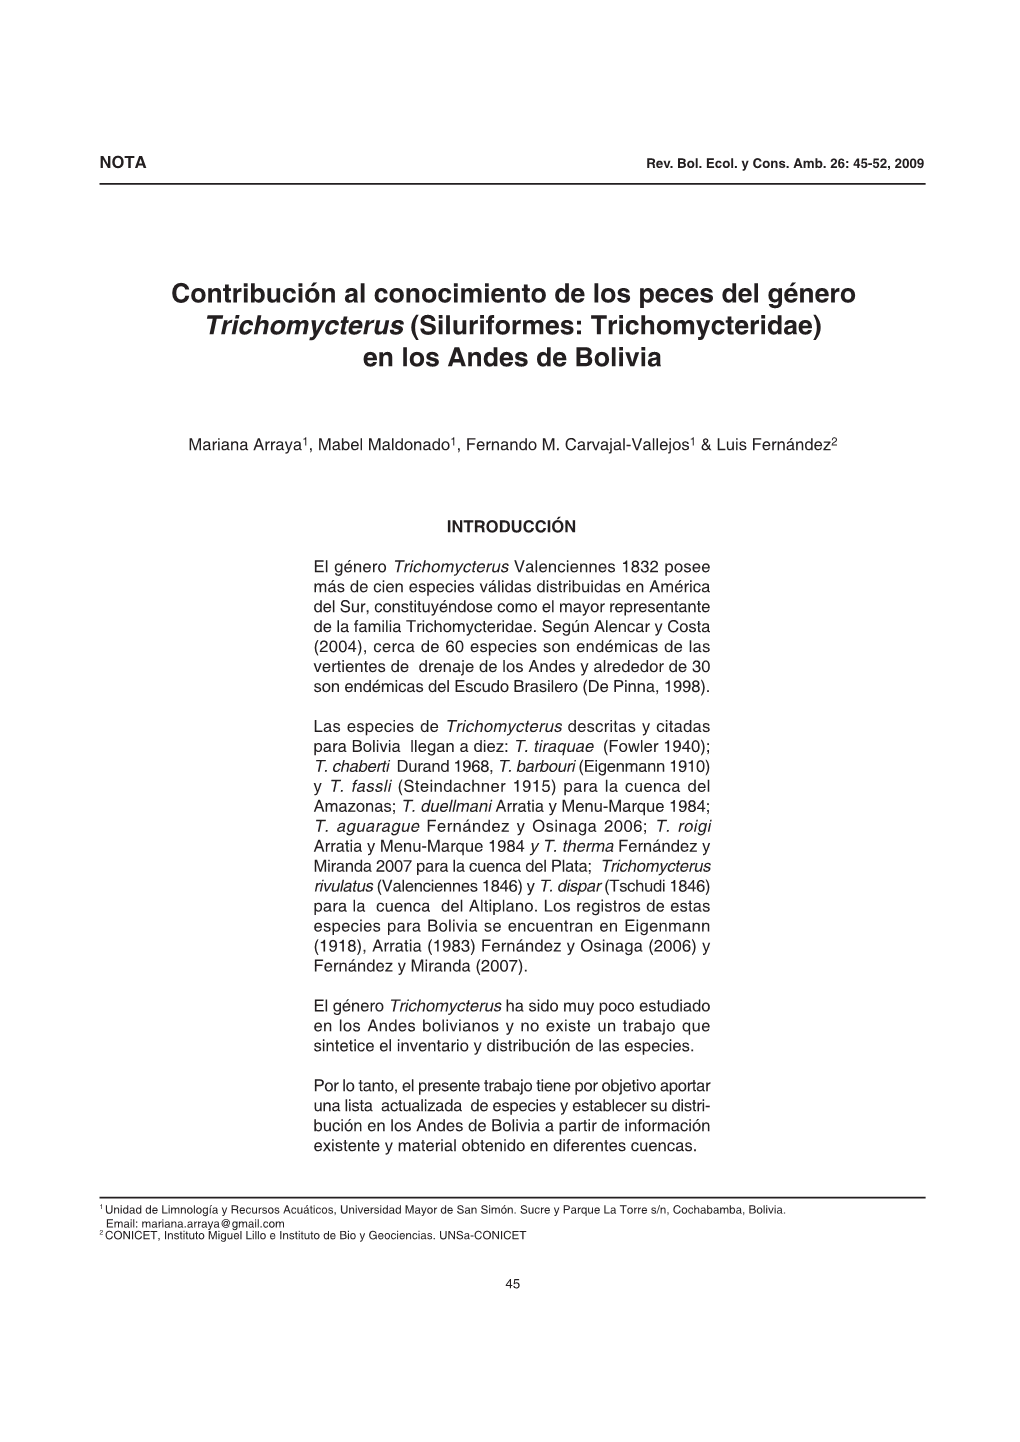 Contribución Al Conocimiento De Los Peces Del Género Trichomycterus (Siluriformes: Trichomycteridae) En Los Andes De Bolivia